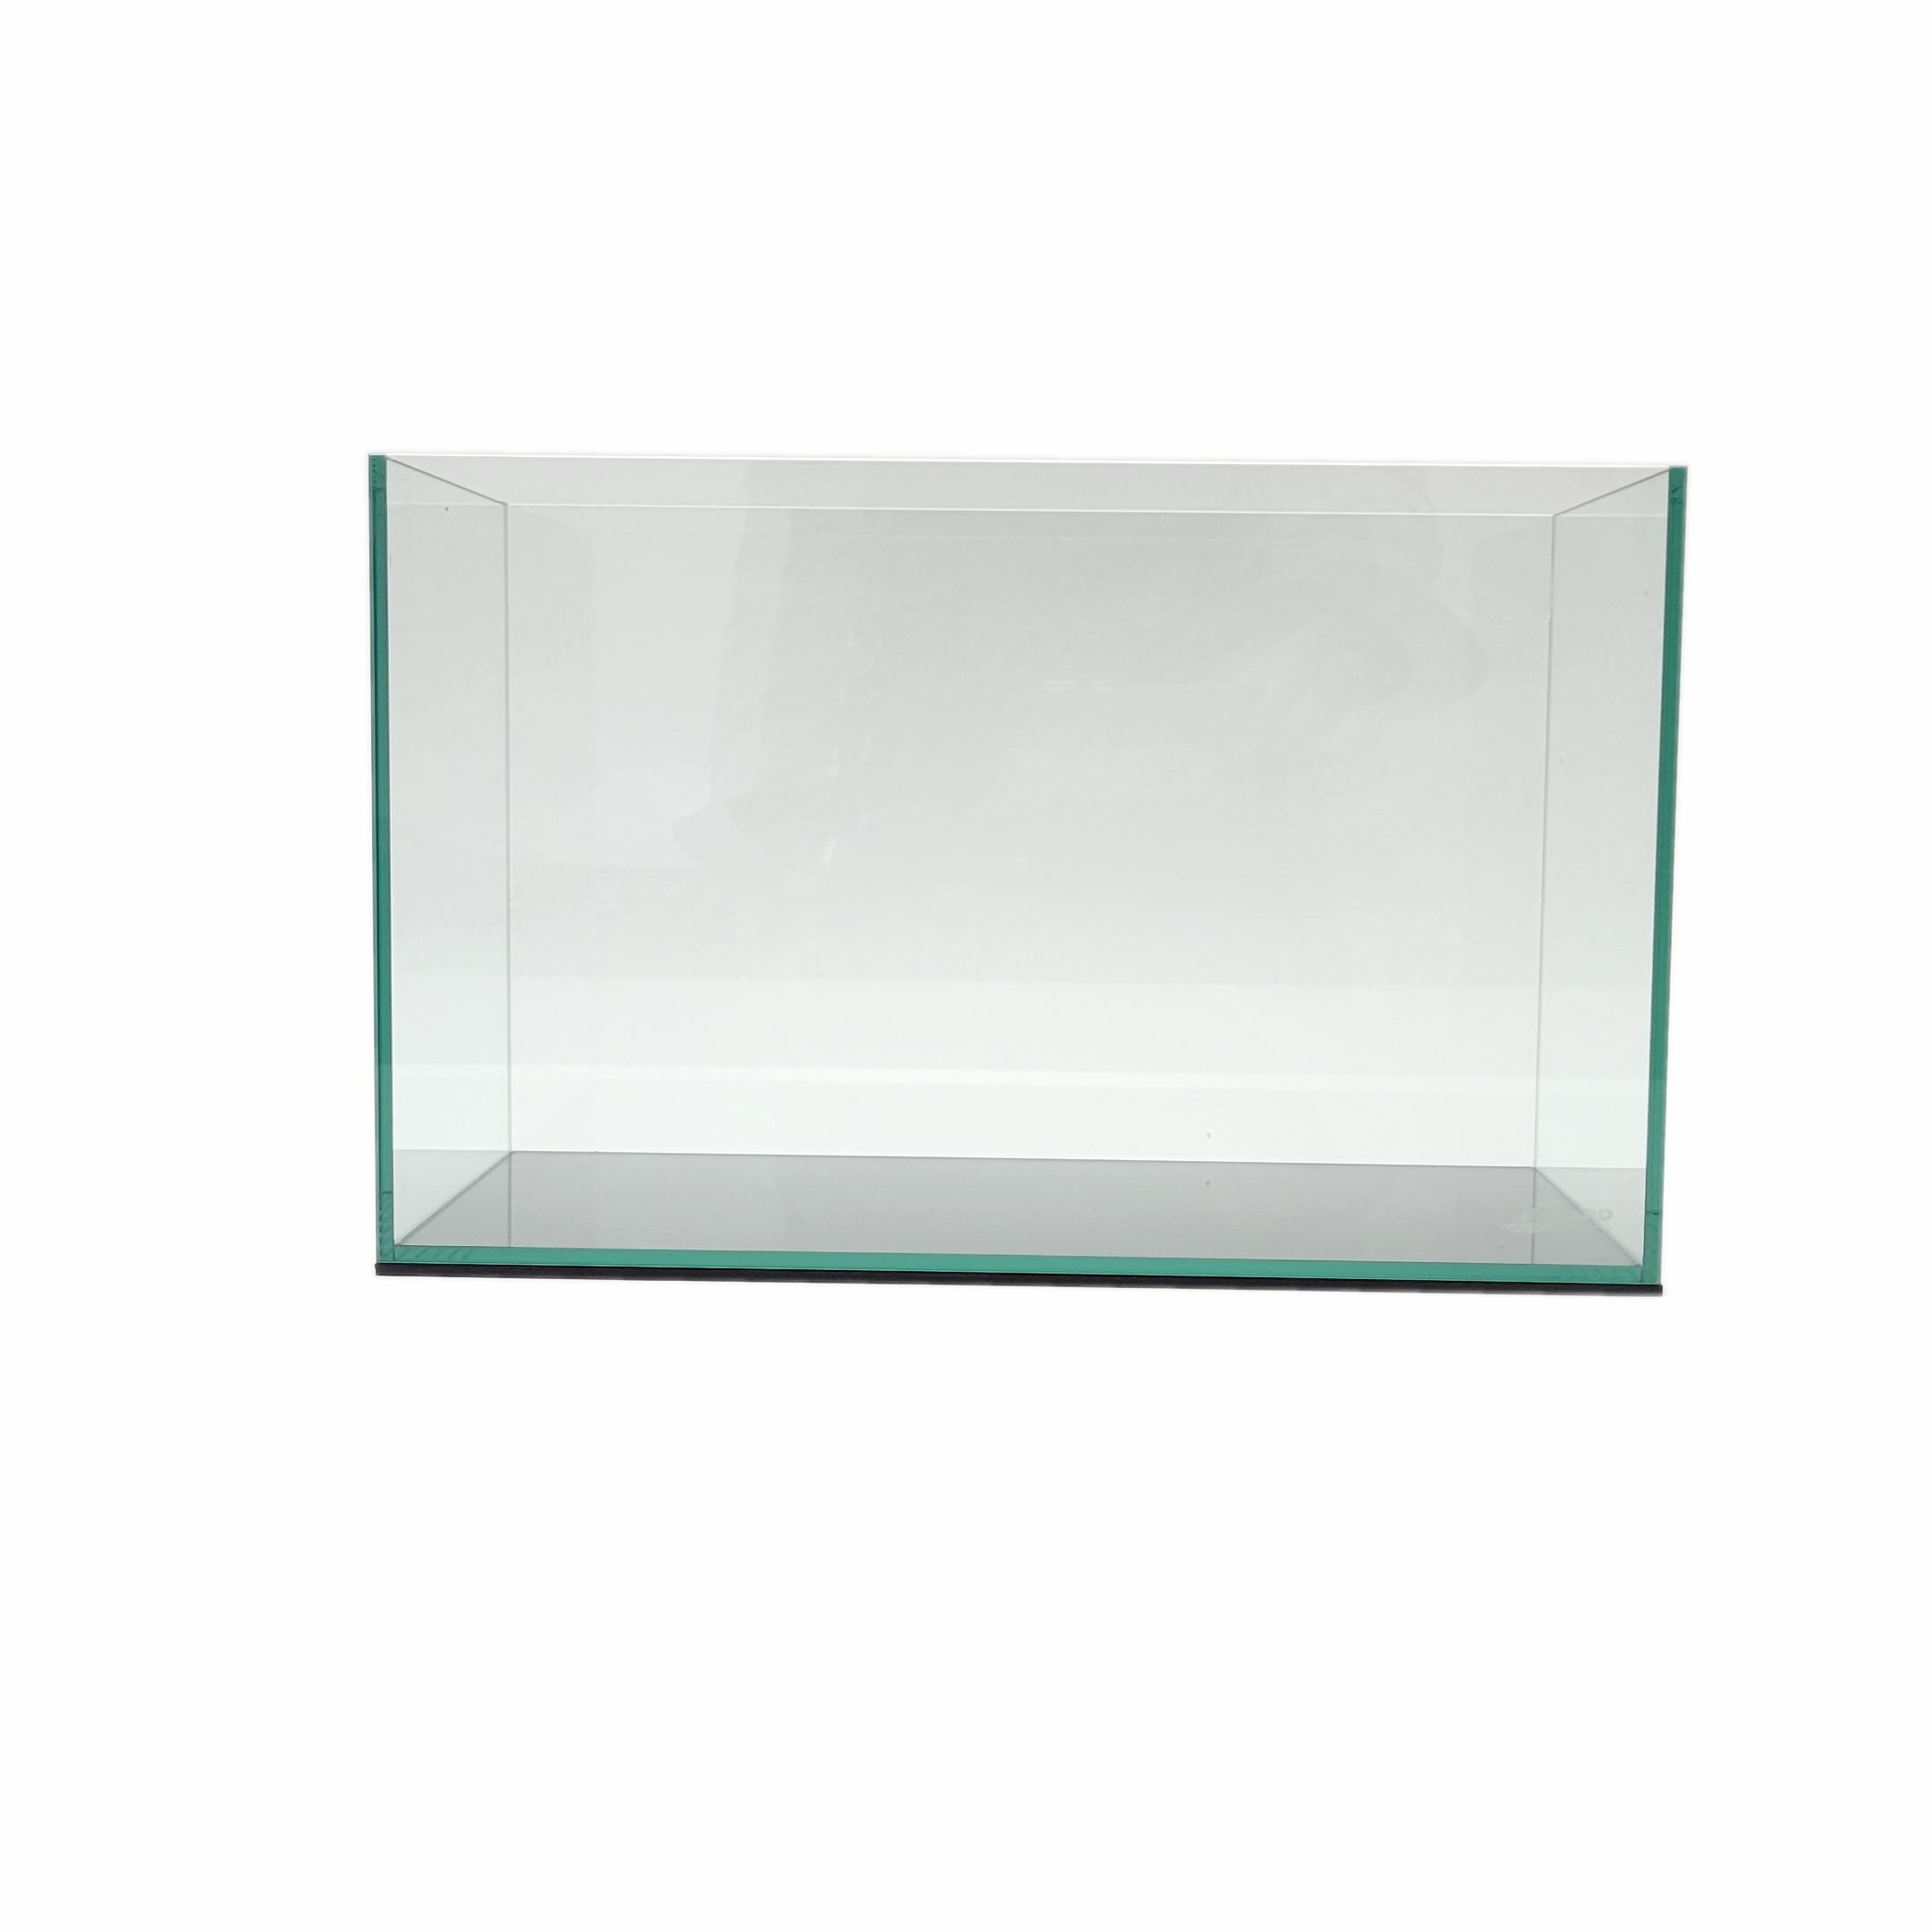 15 Gallon Rimless Clear Glass Aquarium Kit 5mm (23.22x11.02x13.38) -  Lifegard Aquatics